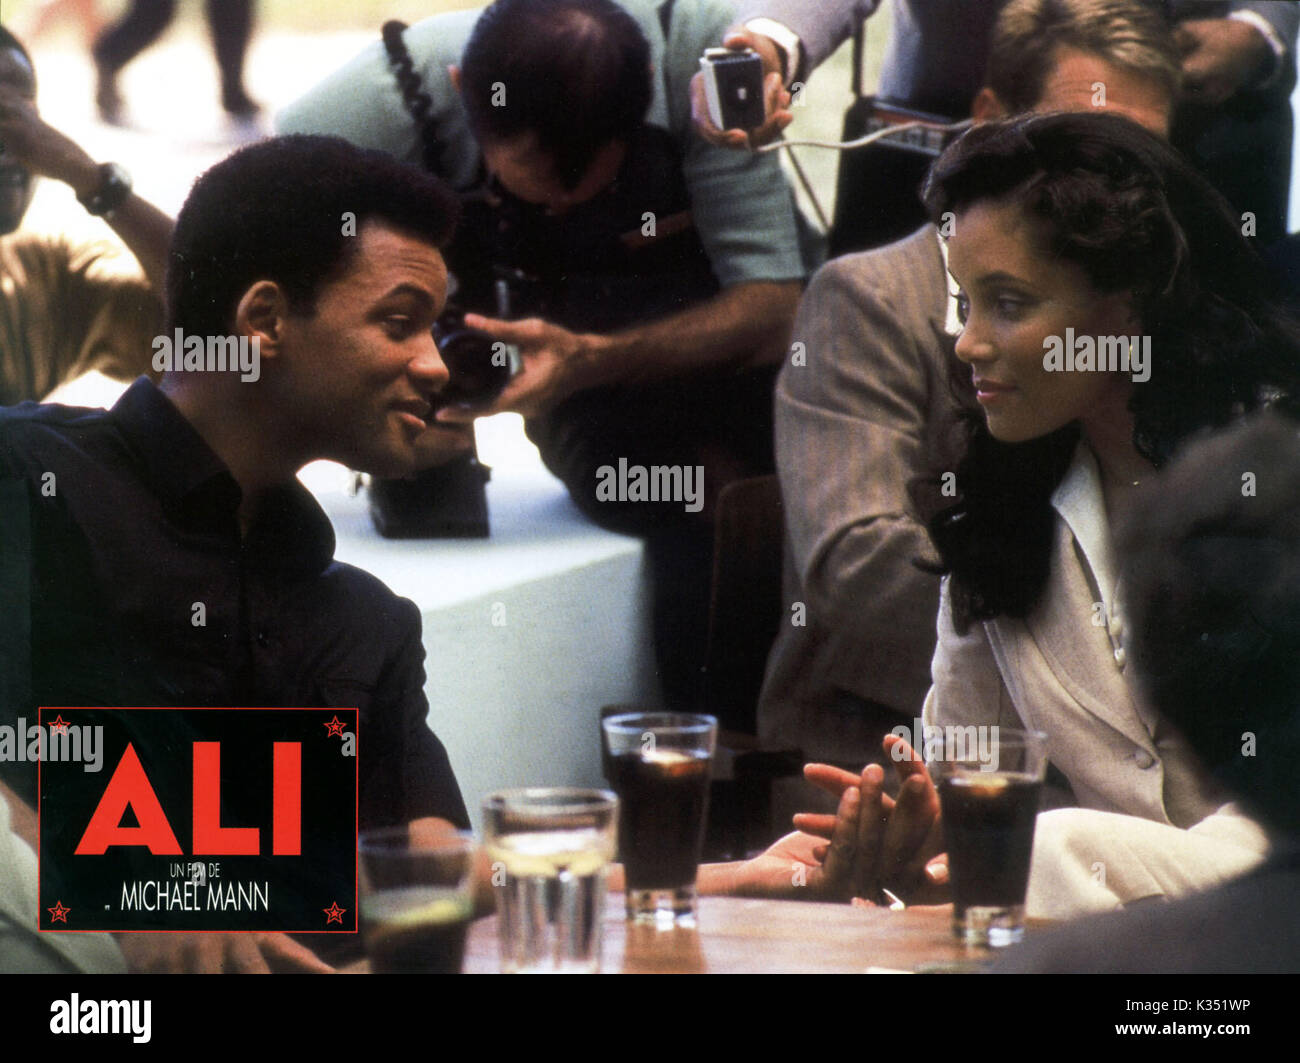 ALI Will Smith come Muhammad Ali, MICHAEL MICHELE data: 2000 Foto Stock